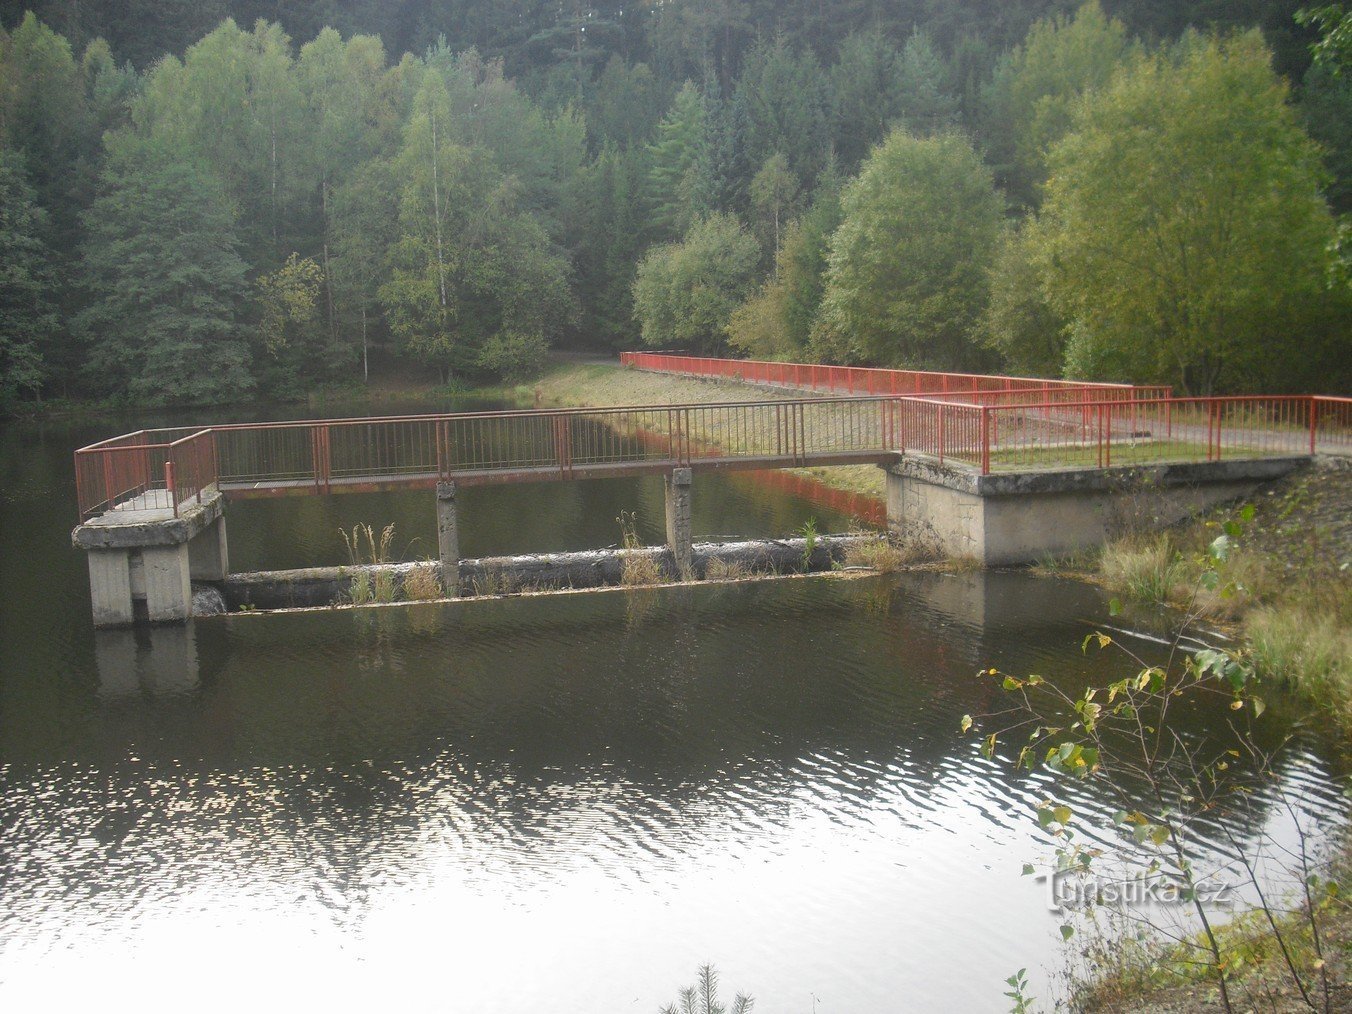 Hồ chứa nước Bílý Halštrov gần Dolní Pasek, một phần của thị trấn Aš